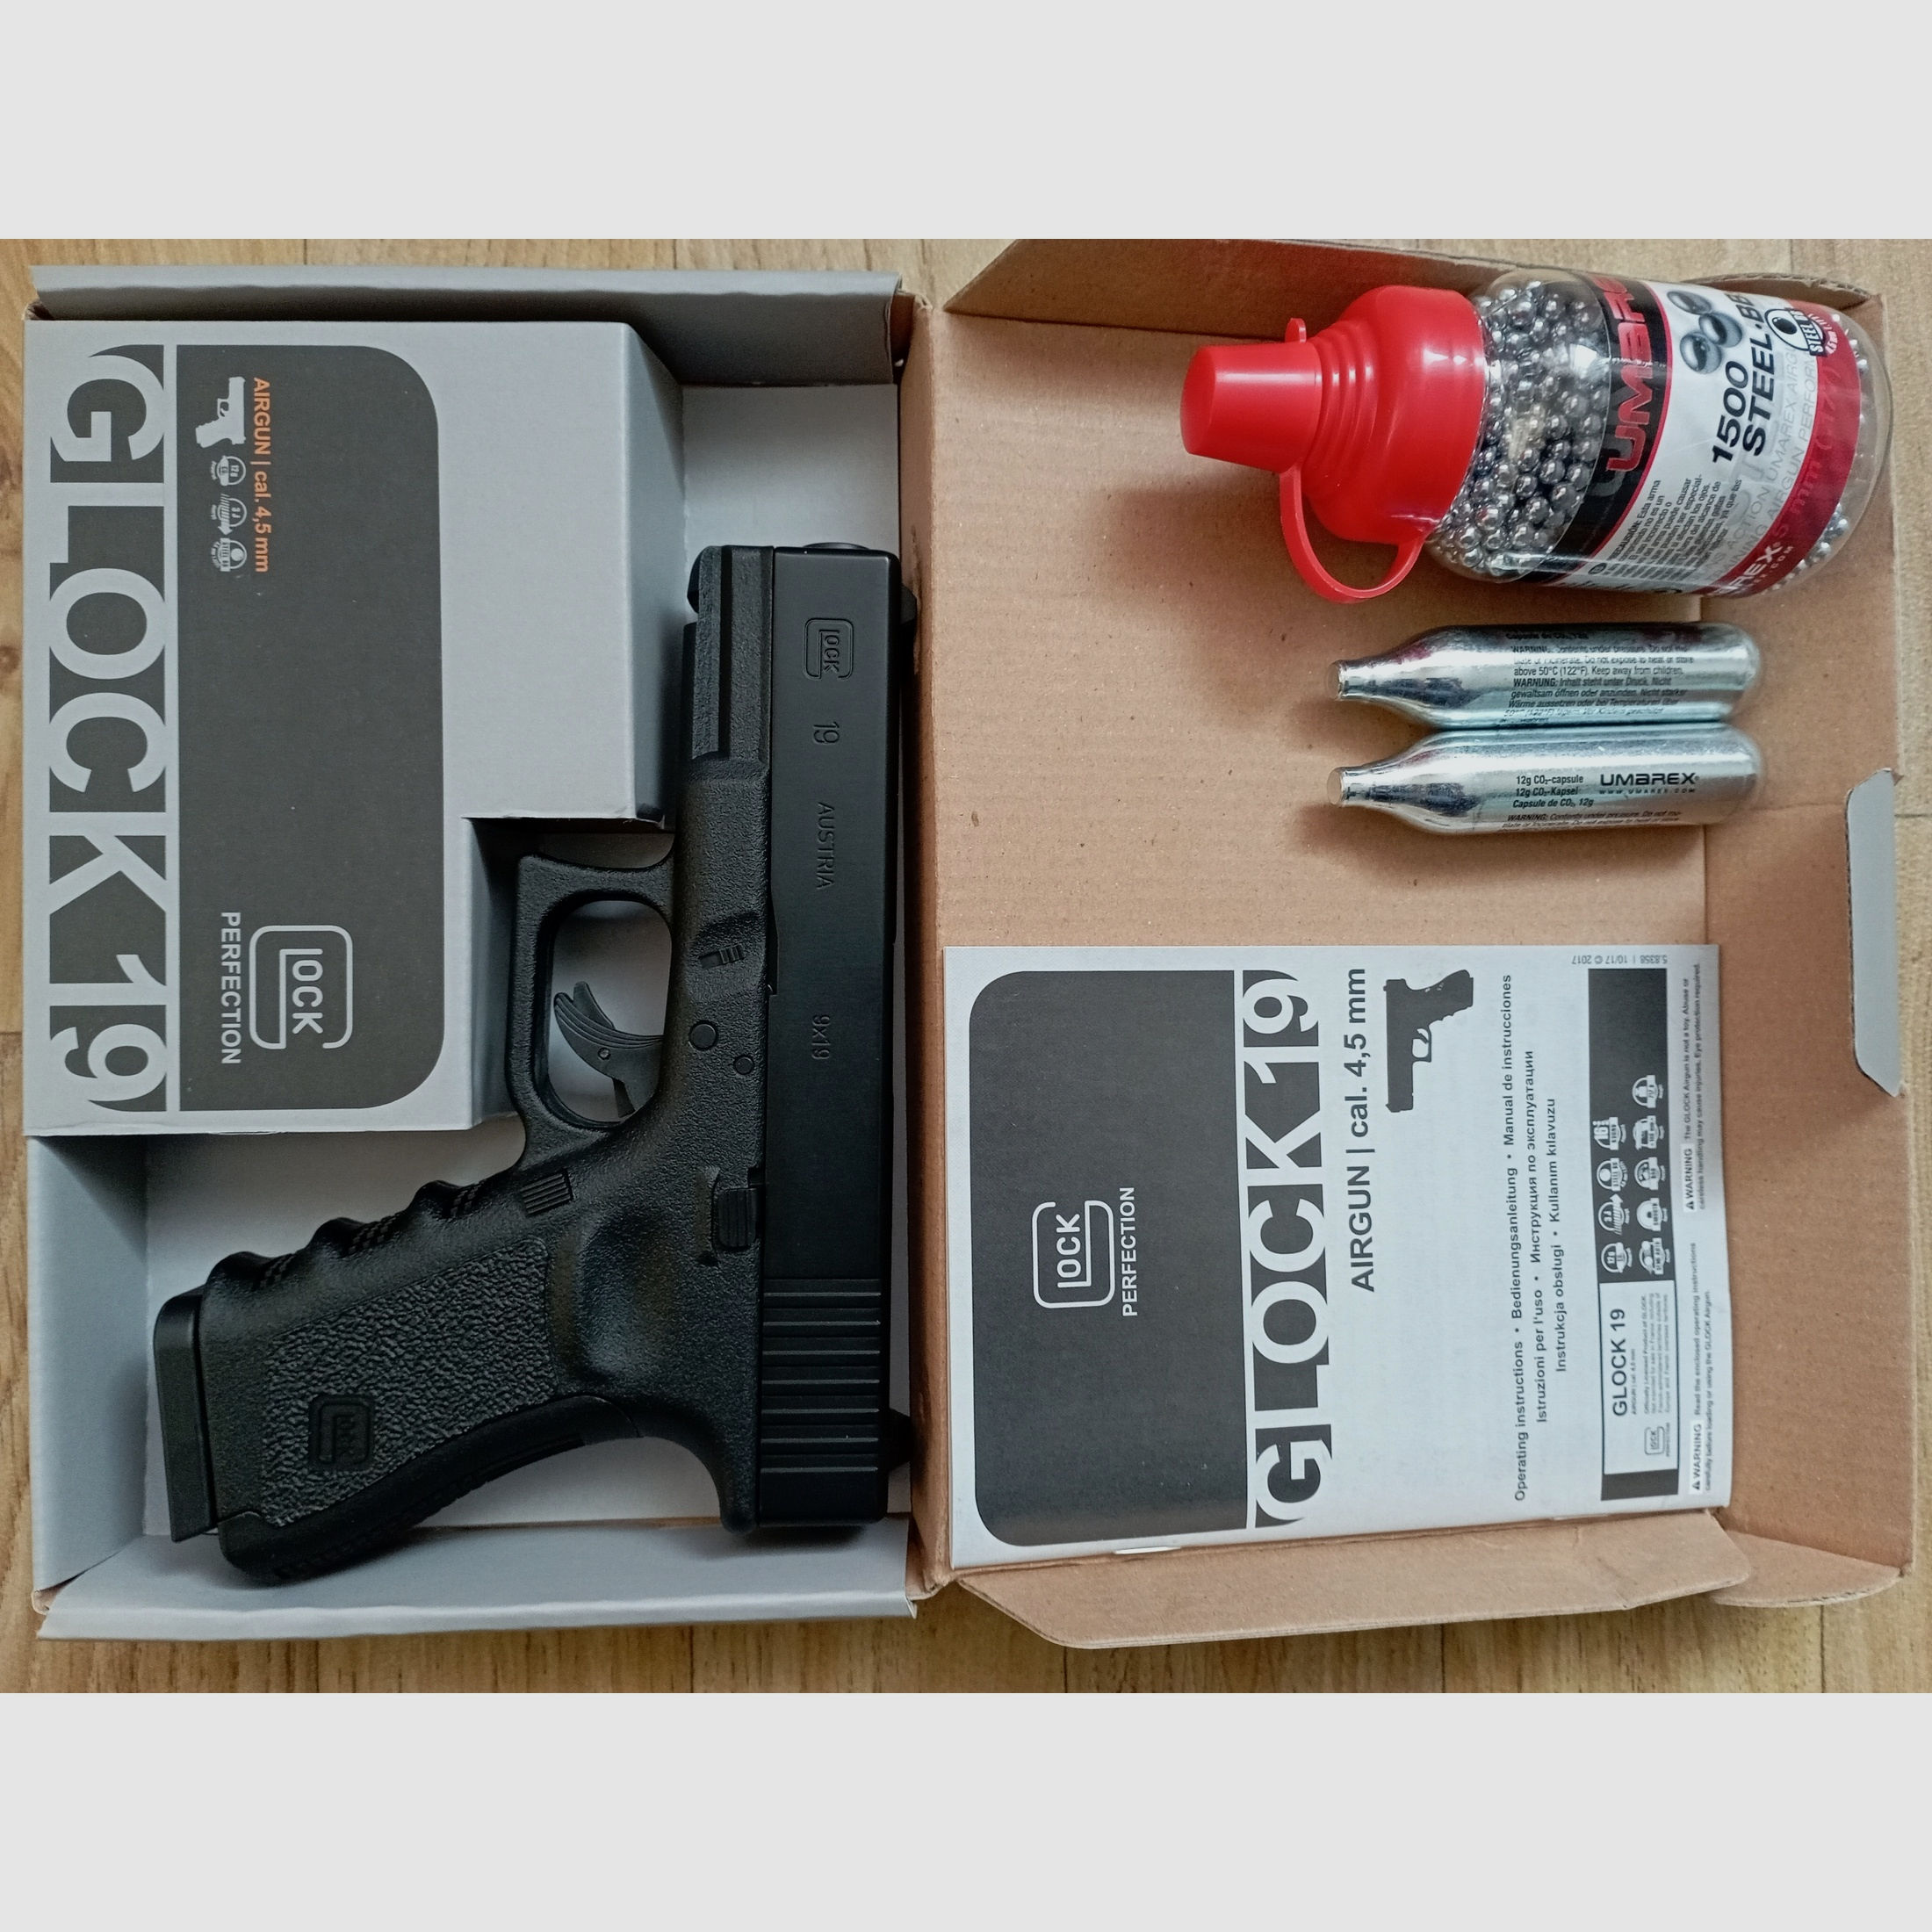 Glock 19 CO2 Pistole Kal. 4,5 mm BB